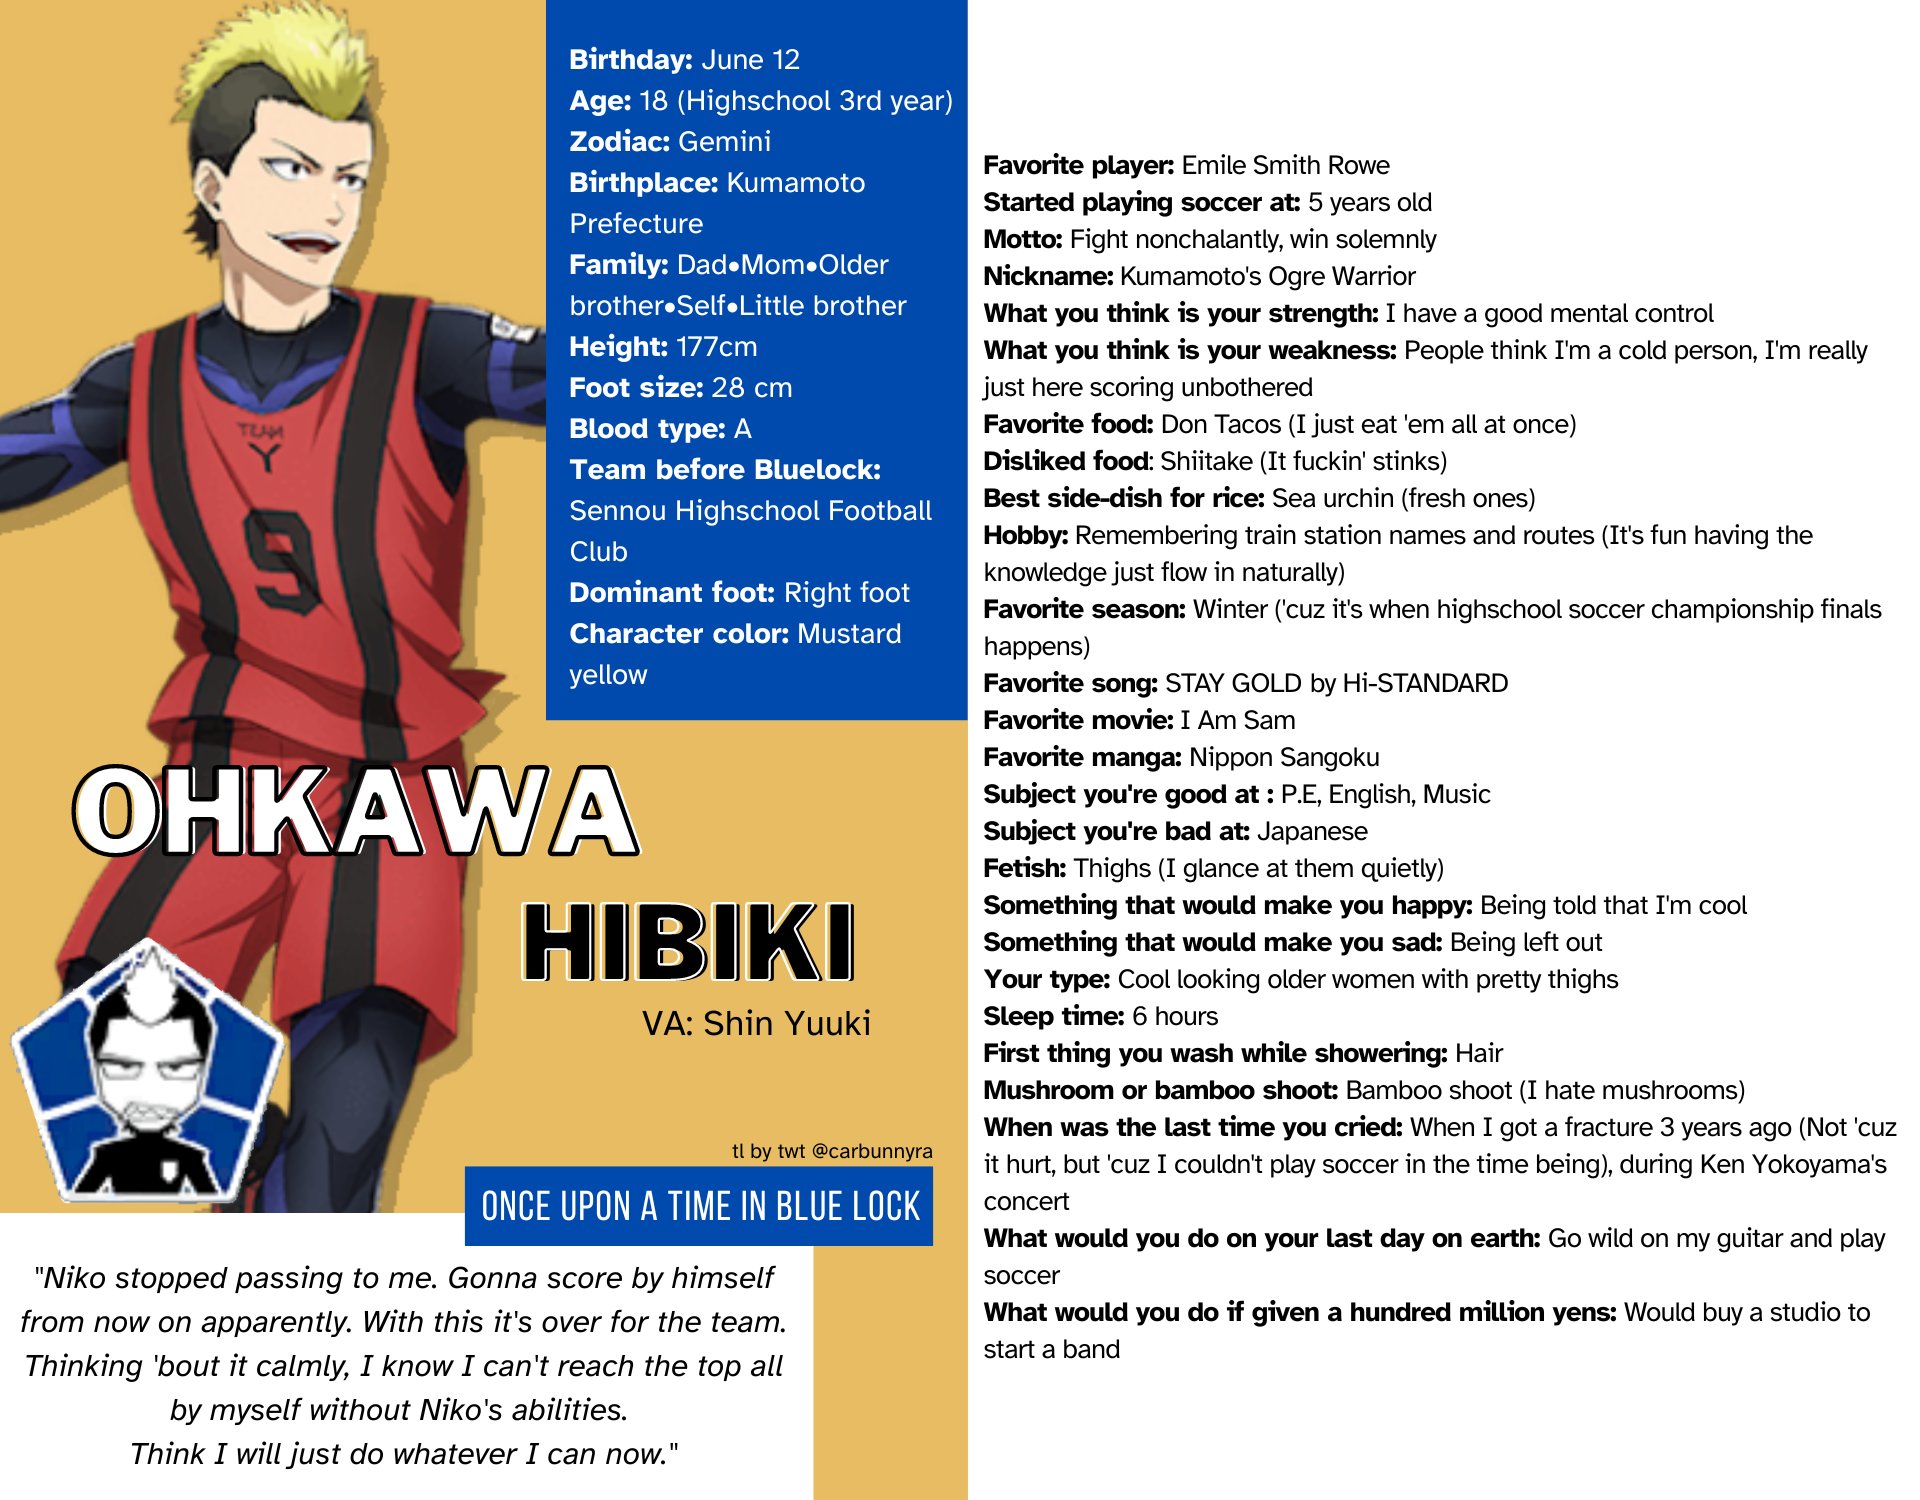 Haikyuu!!: Every Main Character's Age, Height, And Birthday